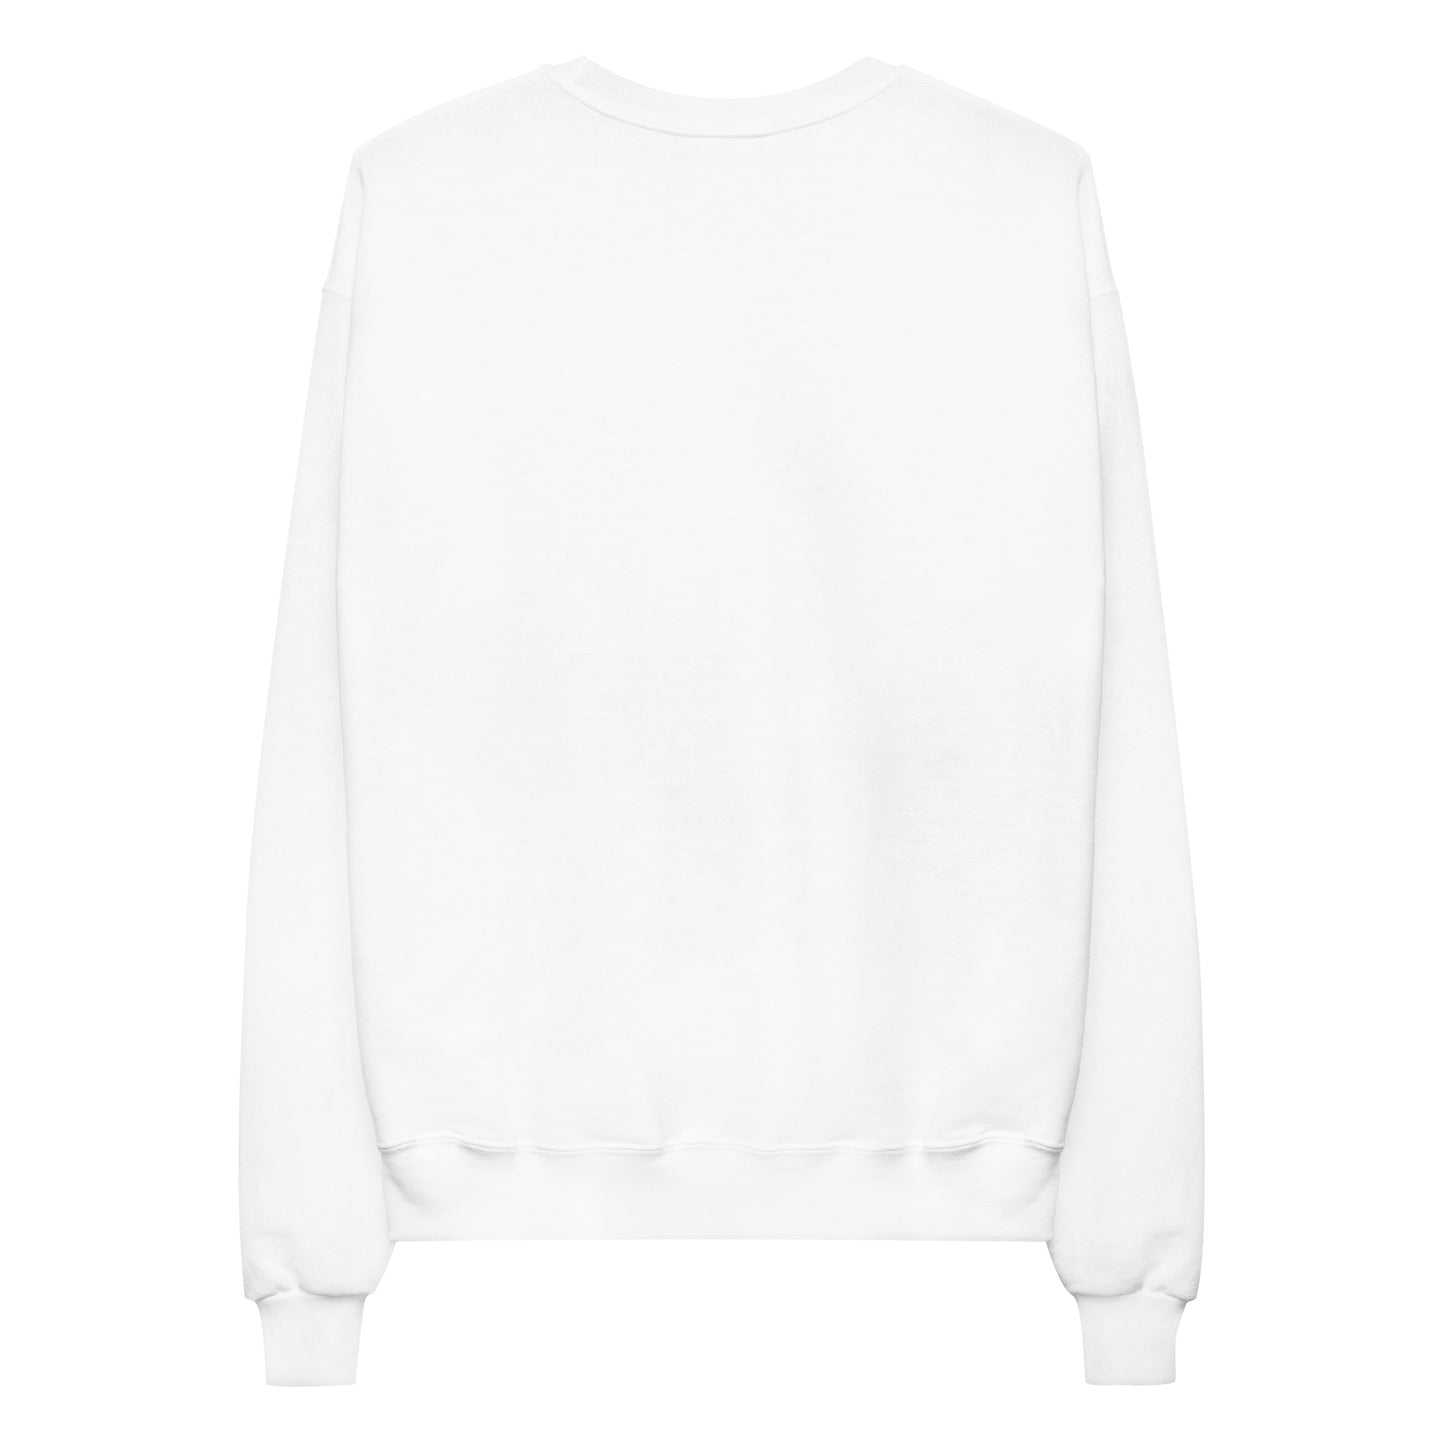 Good Vibes Only Unisex Fleece Sweatshirt